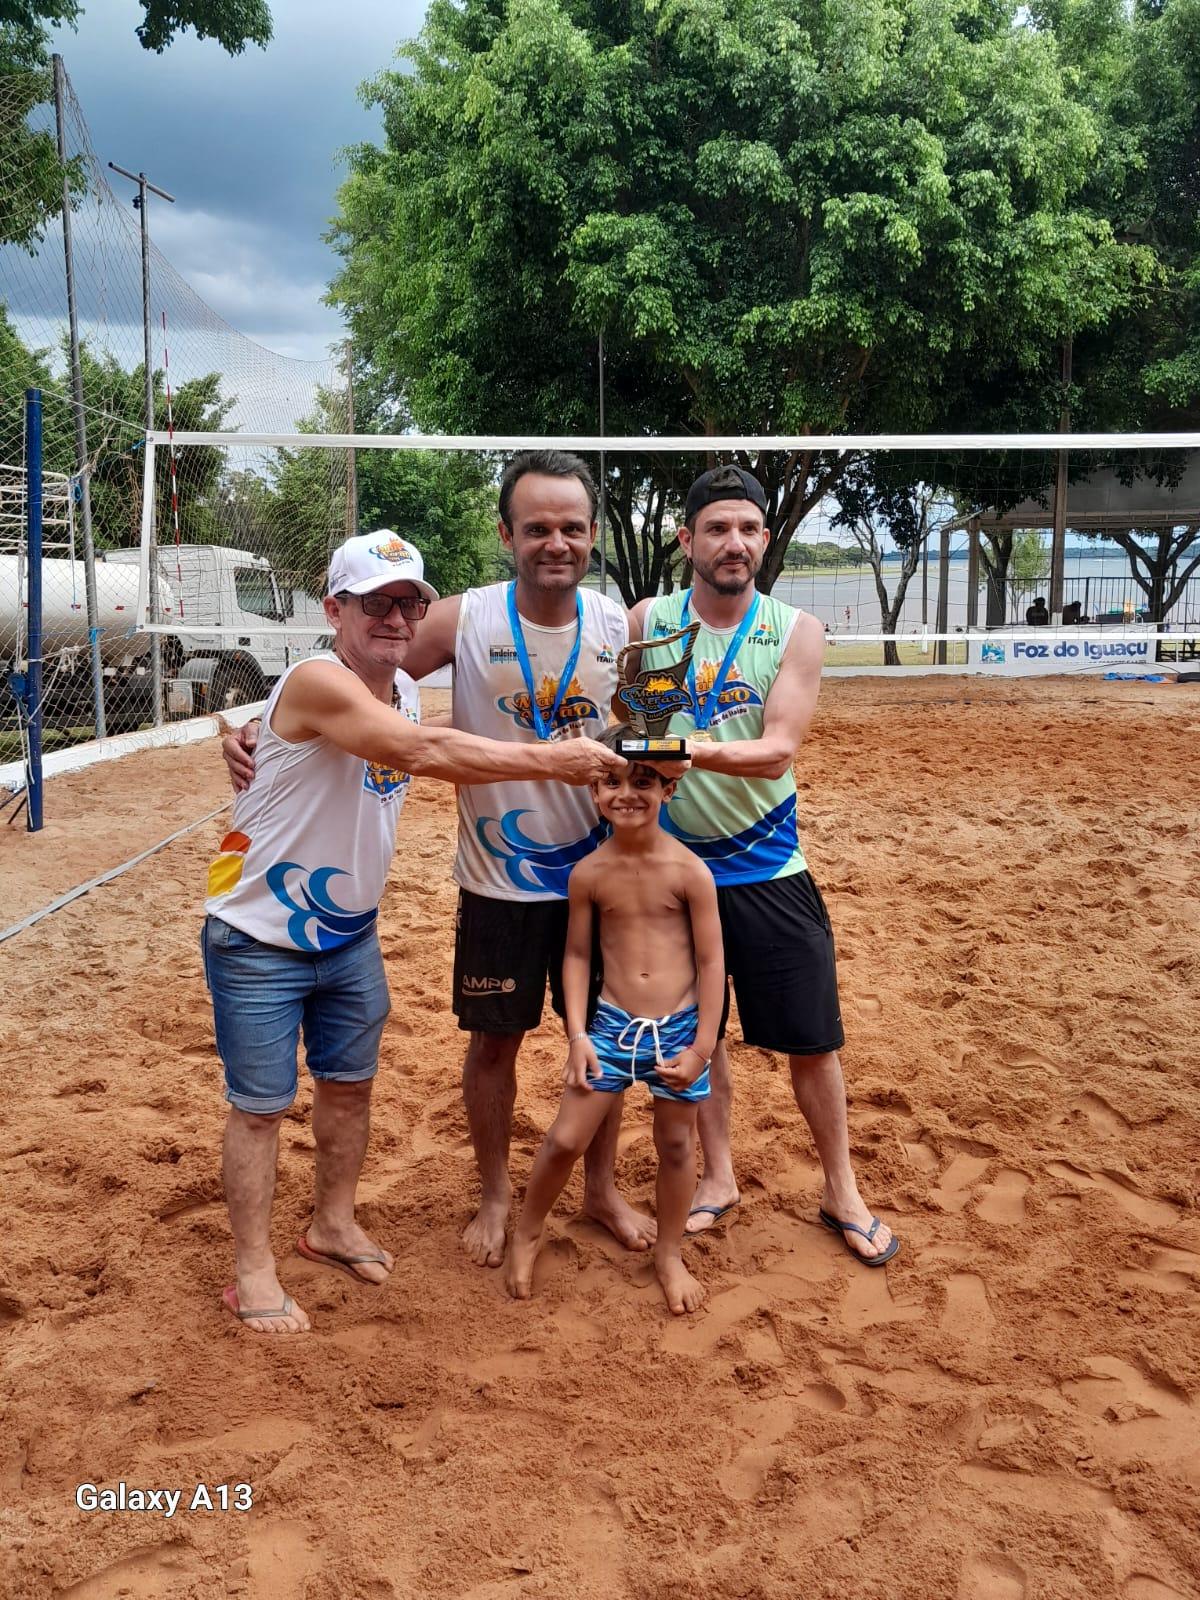 Santa-helenenses são campeões de futevôlei no Mais Verão em Foz do Iguaçu